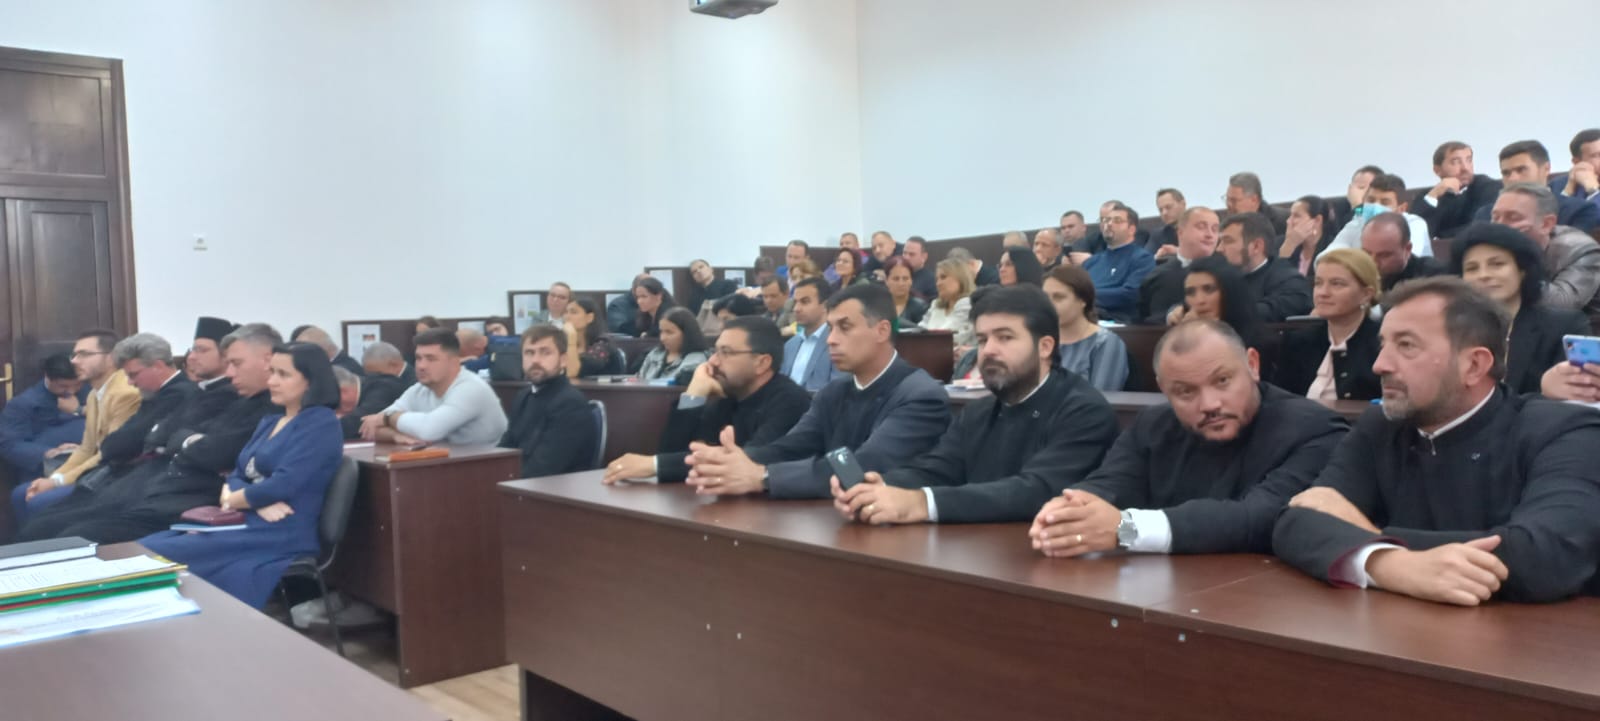 Consfătuirea profesorilor de religie din județul Călărași